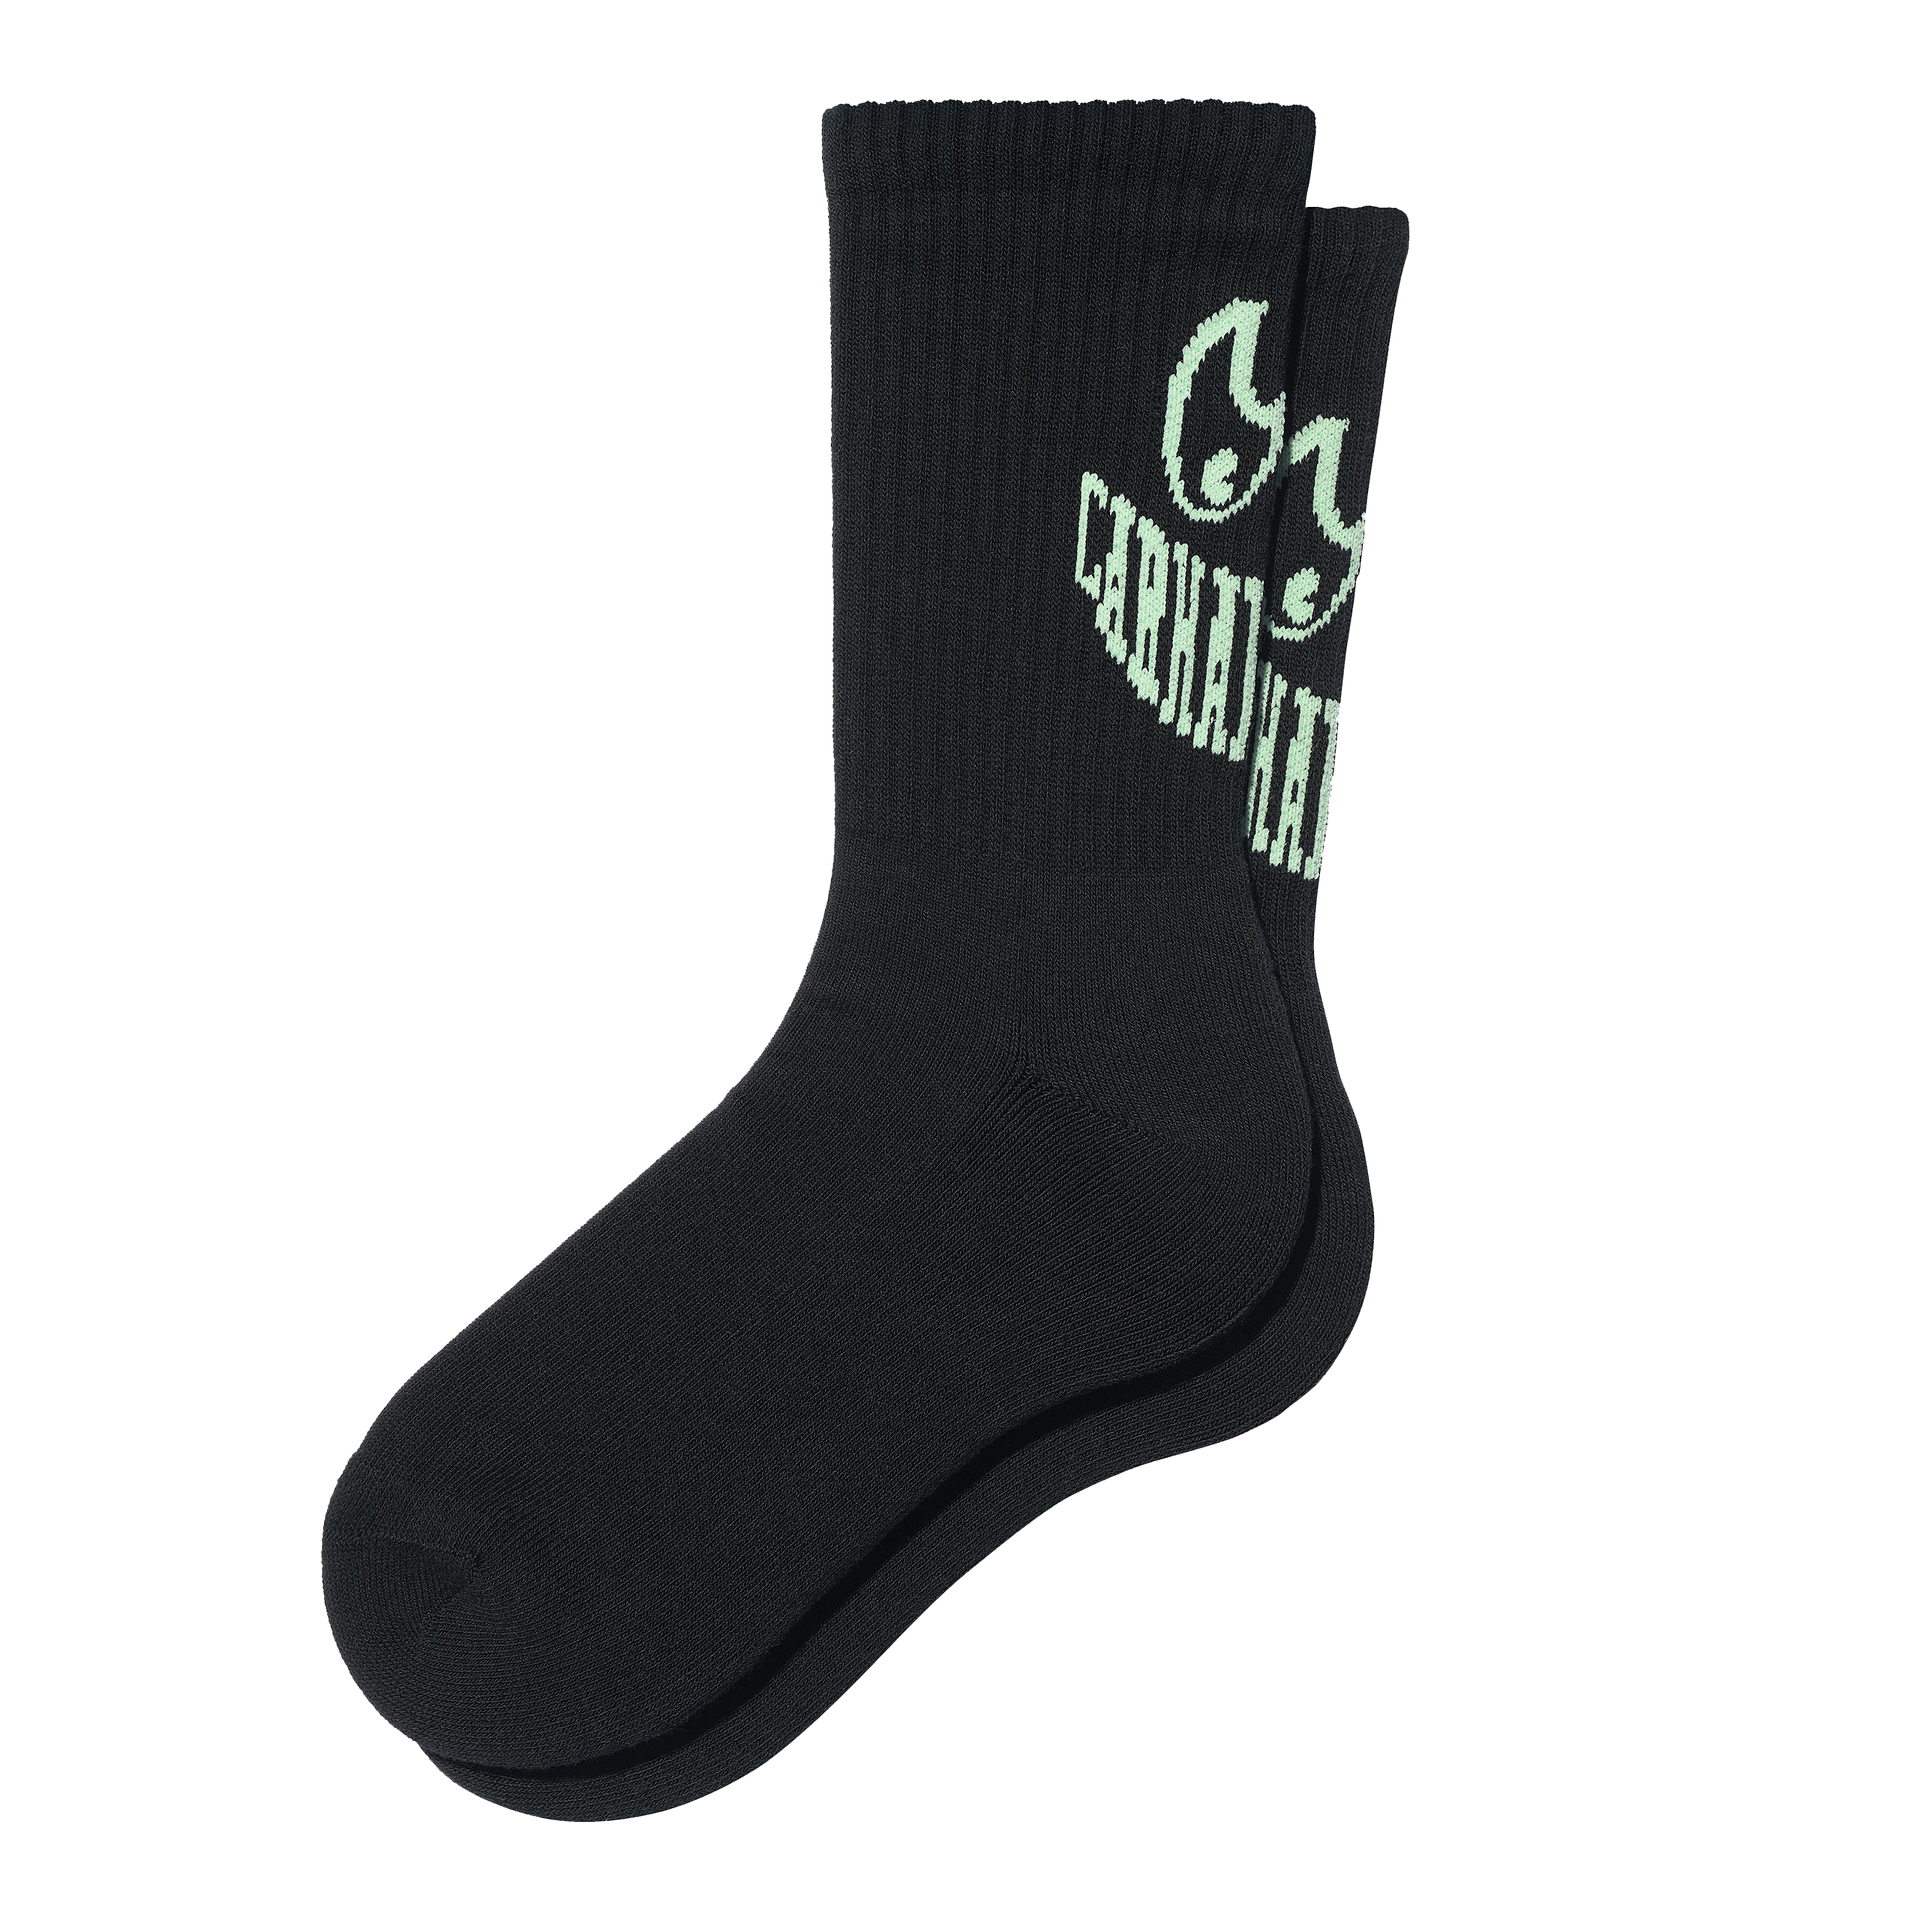 Grin Socks Black / Pale Spearmint